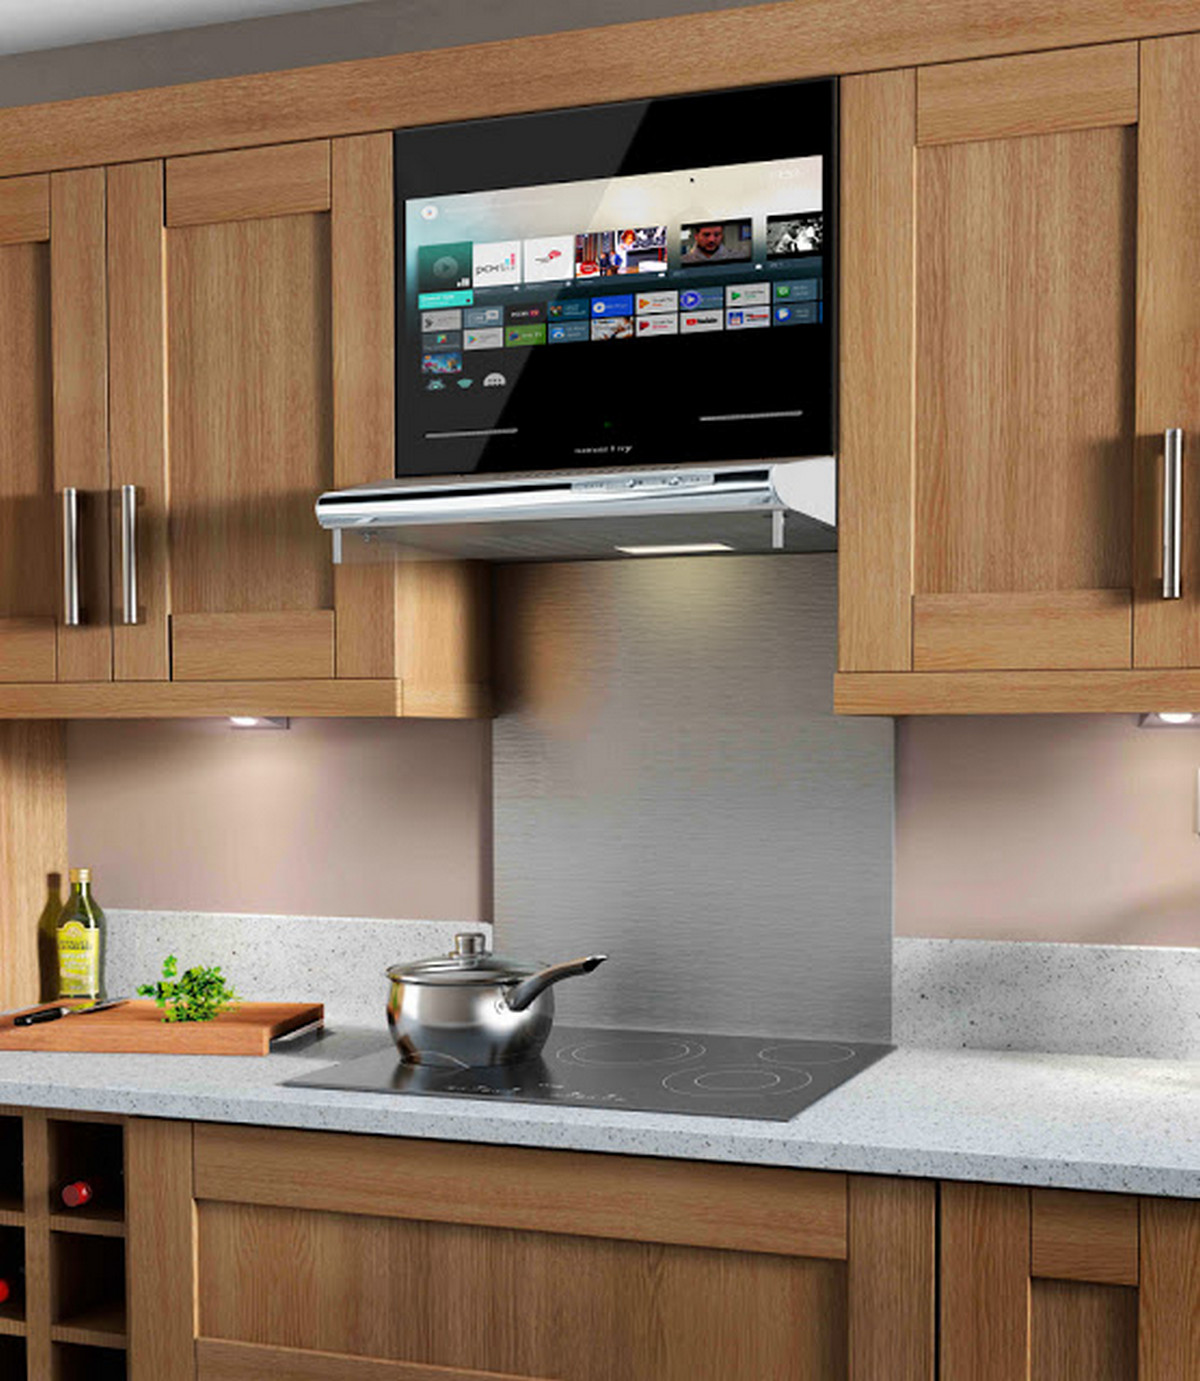 Телевизор на кухню с wifi. Встраиваемый телевизор для кухни. Телевизор встраиваемый в кухонный гарнитур. Встроенный телевизор в кухонный гарнитур. Встраиваемые кухни.